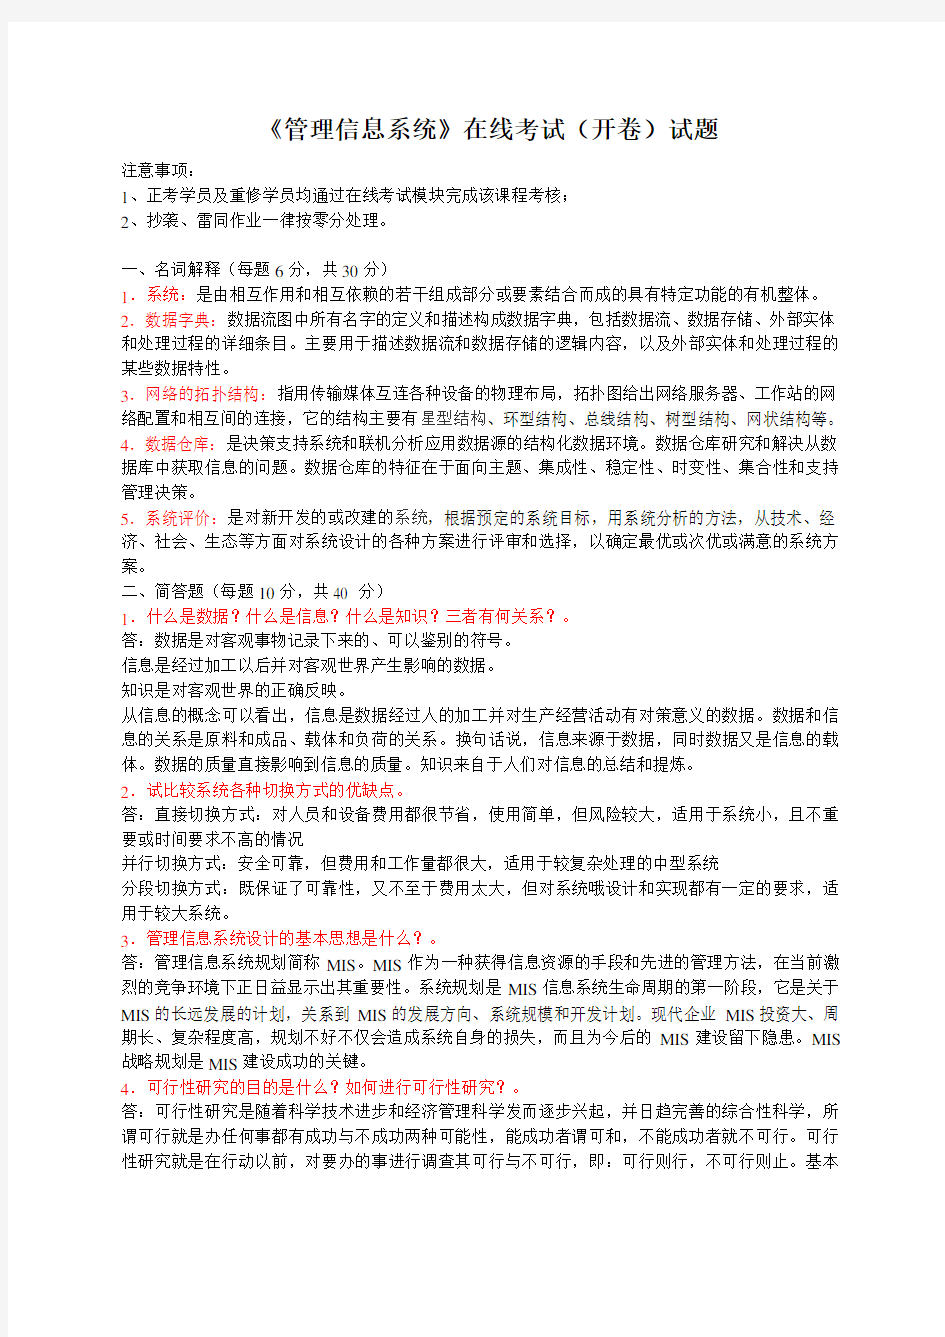 中国石油大学远程教育《管理信息系统》在线考试(开卷)试题